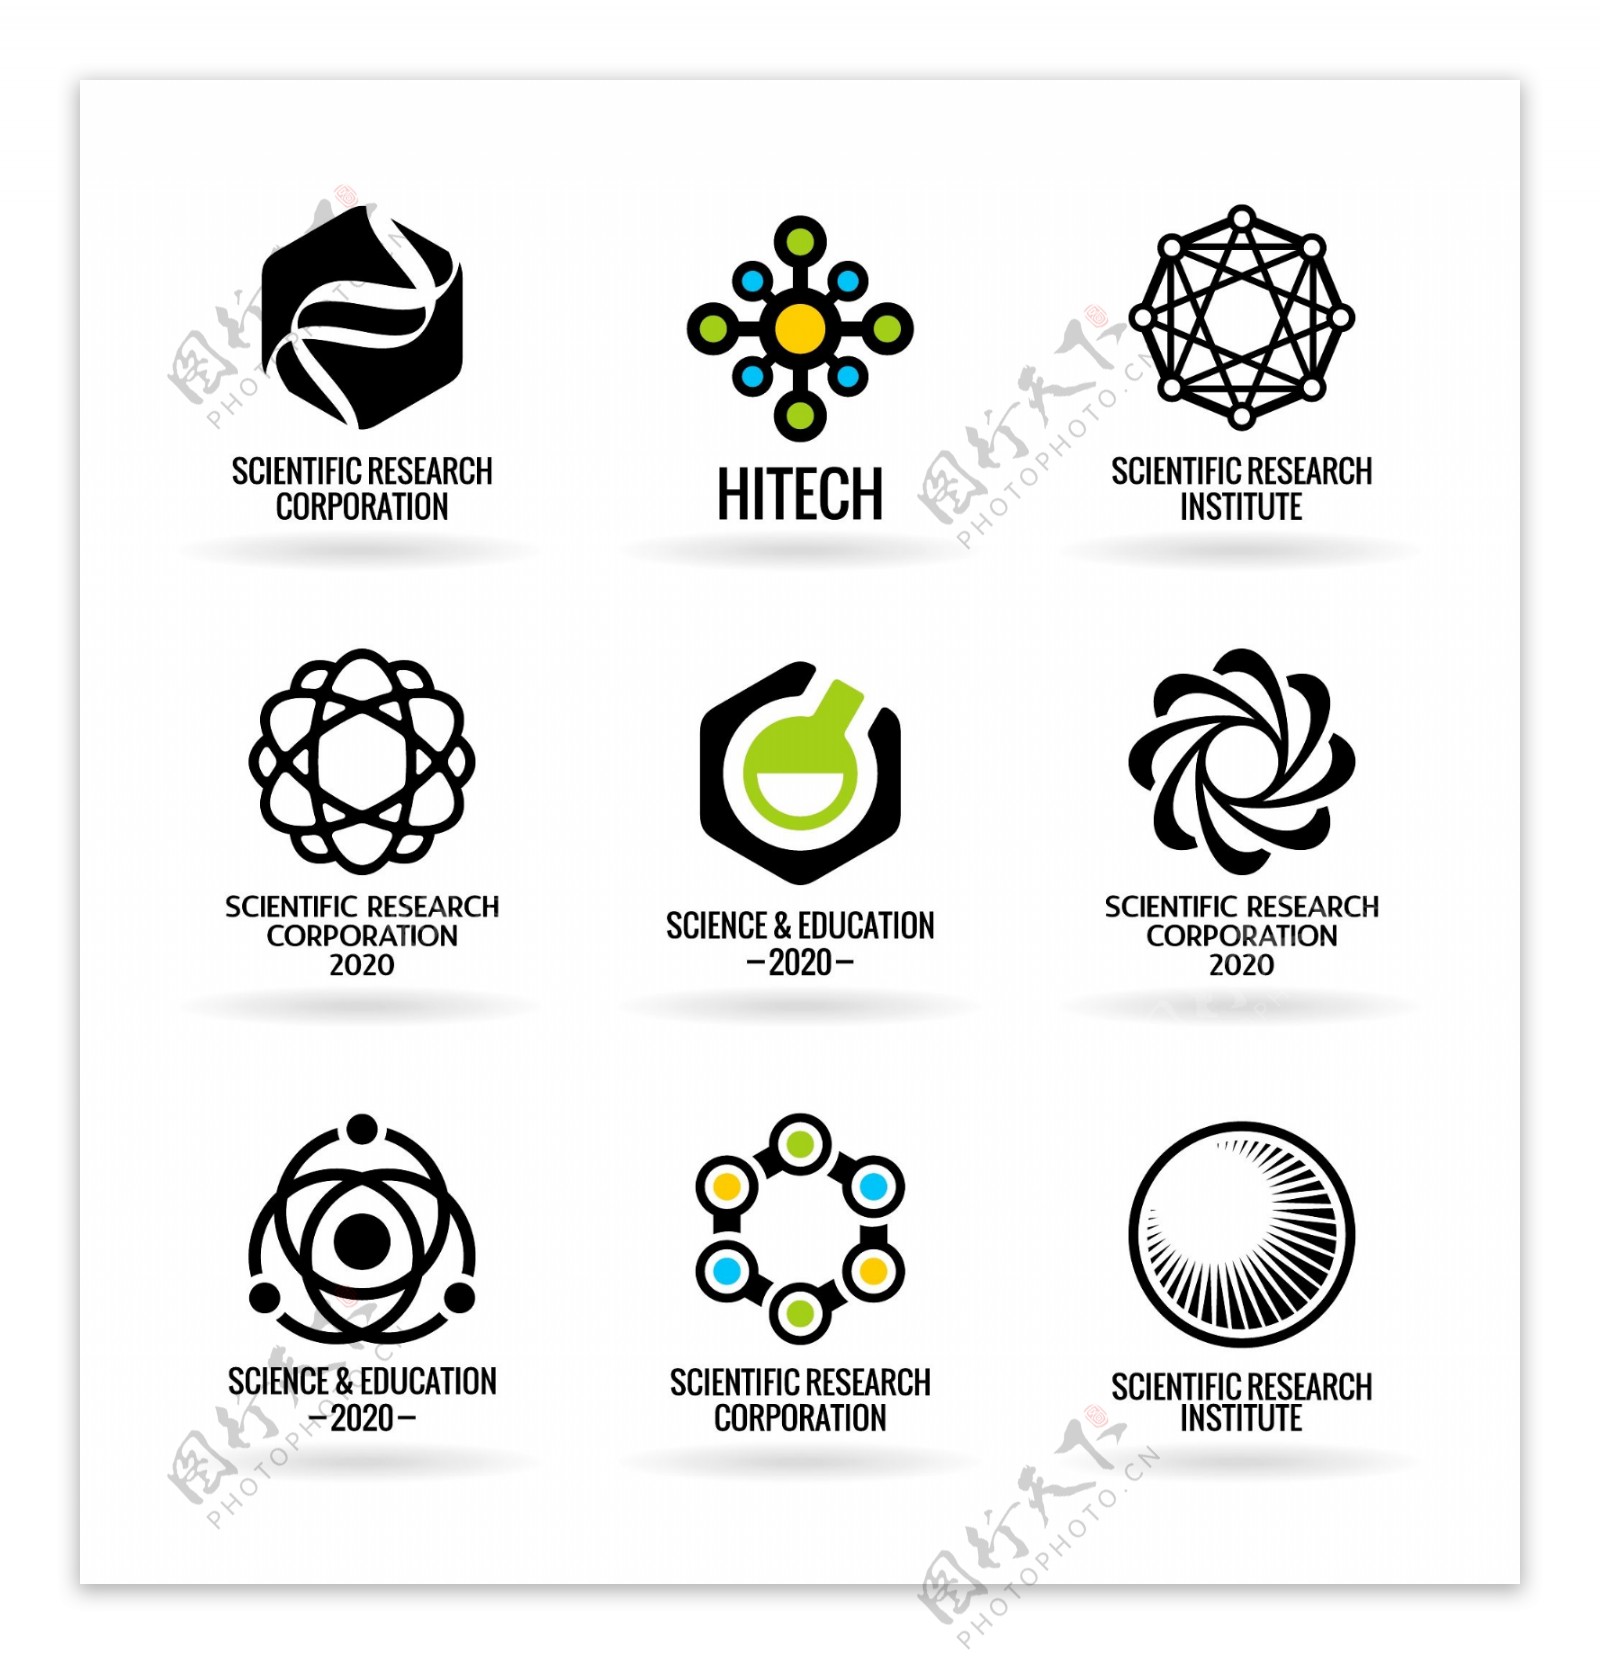 信息科技logo设计